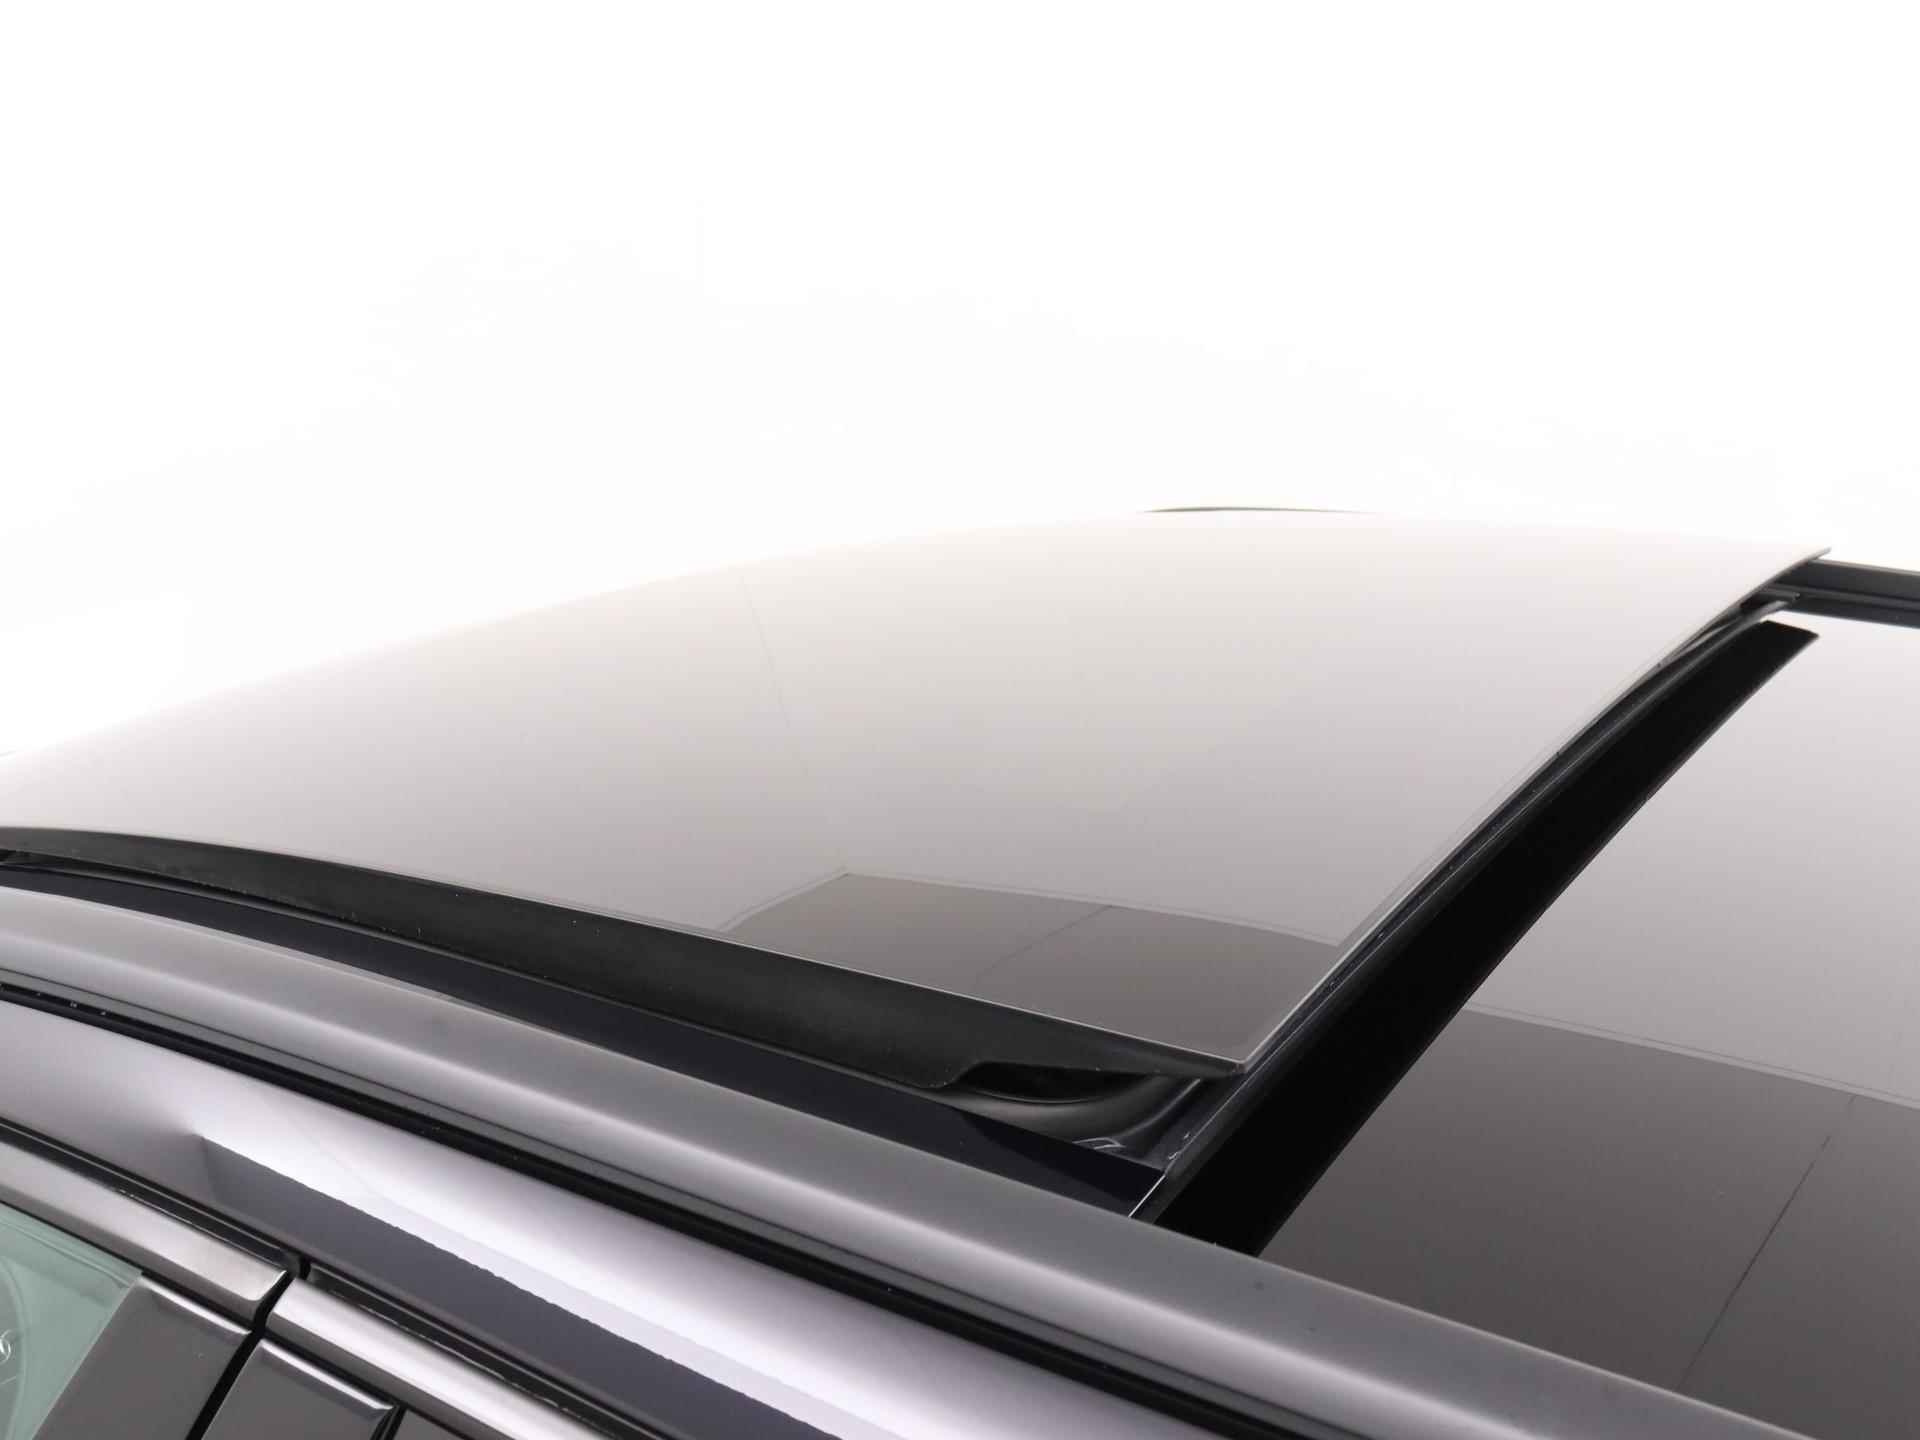 Audi RS 6 Avant TFSI quattro 600 PK | Head-up display | Bang & Olufsen Soundsystem | 22 inch lm velgen | RS Dynamic Pakket Plus | RS Design pakket Rood |Optiekpakket Zwart Plus | Panorama dak | RS Sportuitlaat | Keramische remschijven Rood | RS Sportonderstel Plus | Servosluiting deuren | Nu € 36.129,- ACTIEKORTING! | DIRECT LEVERBAAR! | - 27/35